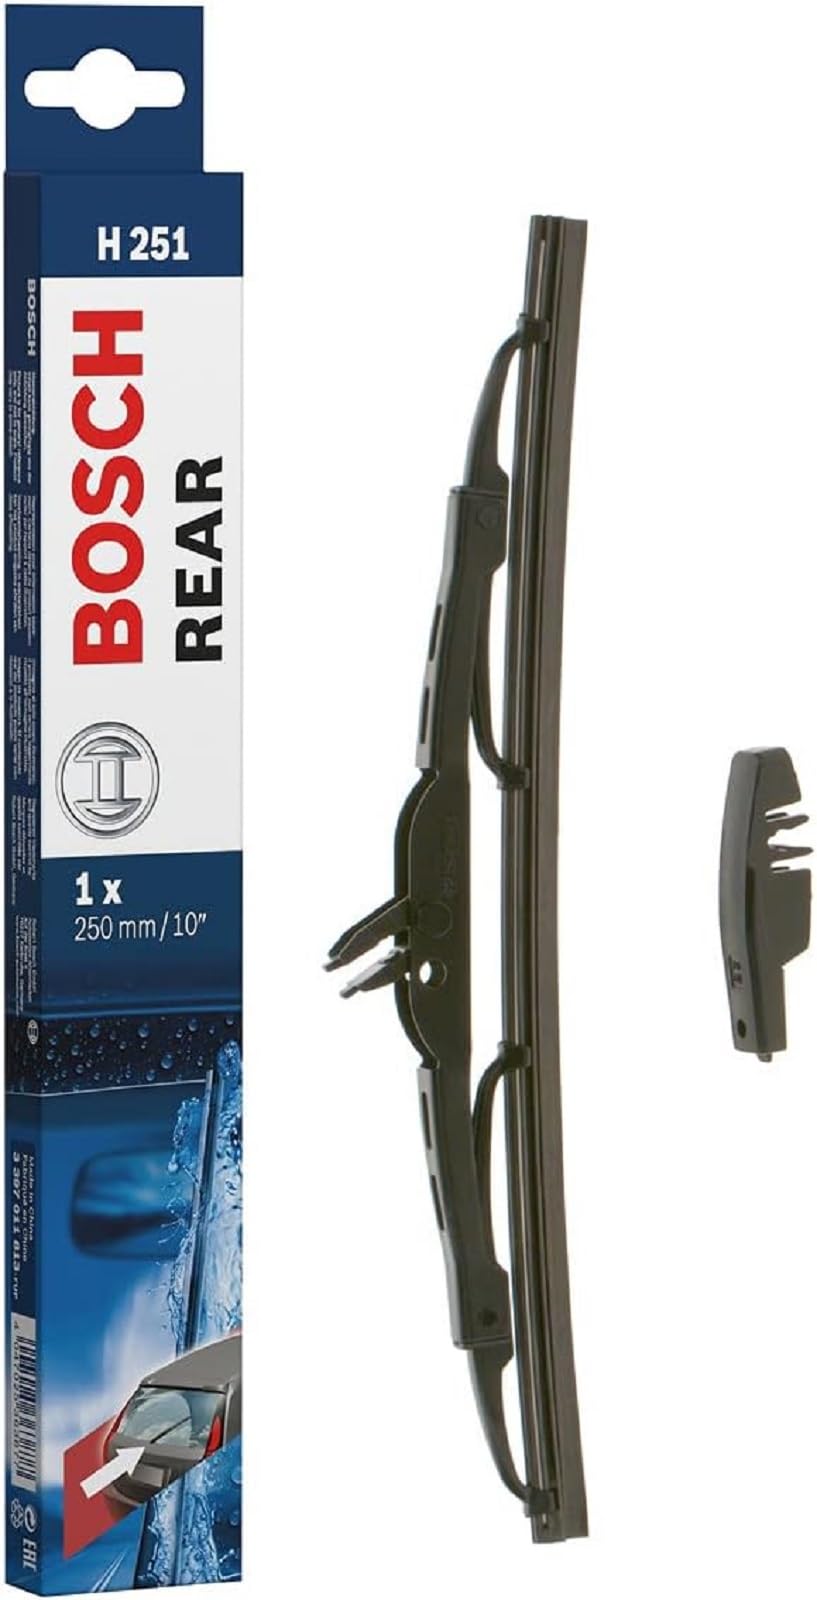 Bosch Scheibenwischer Rear H251, Länge: 250mm – Scheibenwischer für Heckscheibe von Bosch Automotive